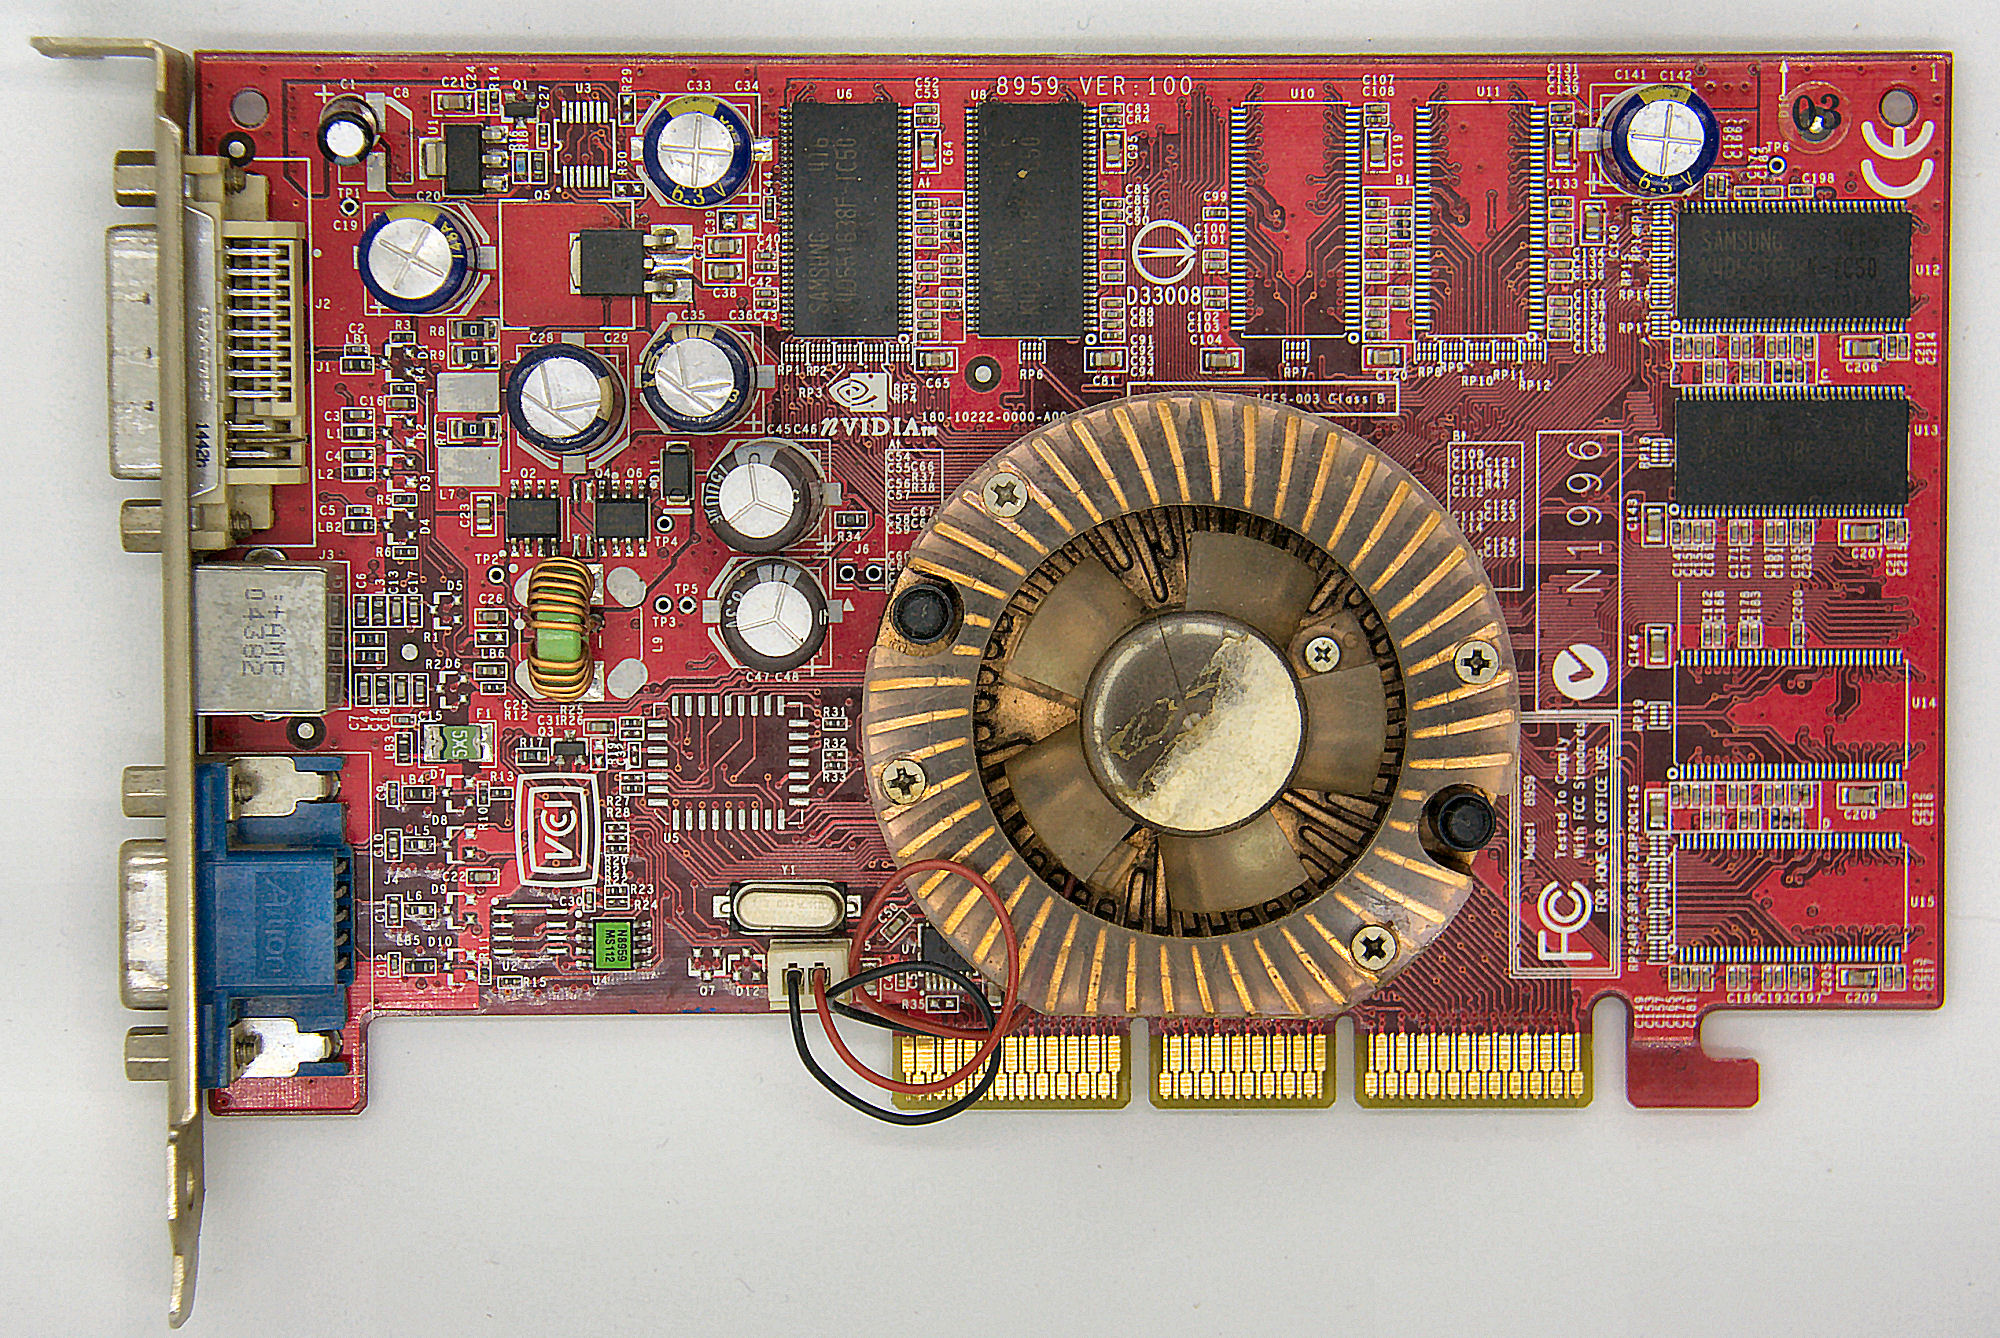 MSI FX5700LE-TD128 2X AGP video card